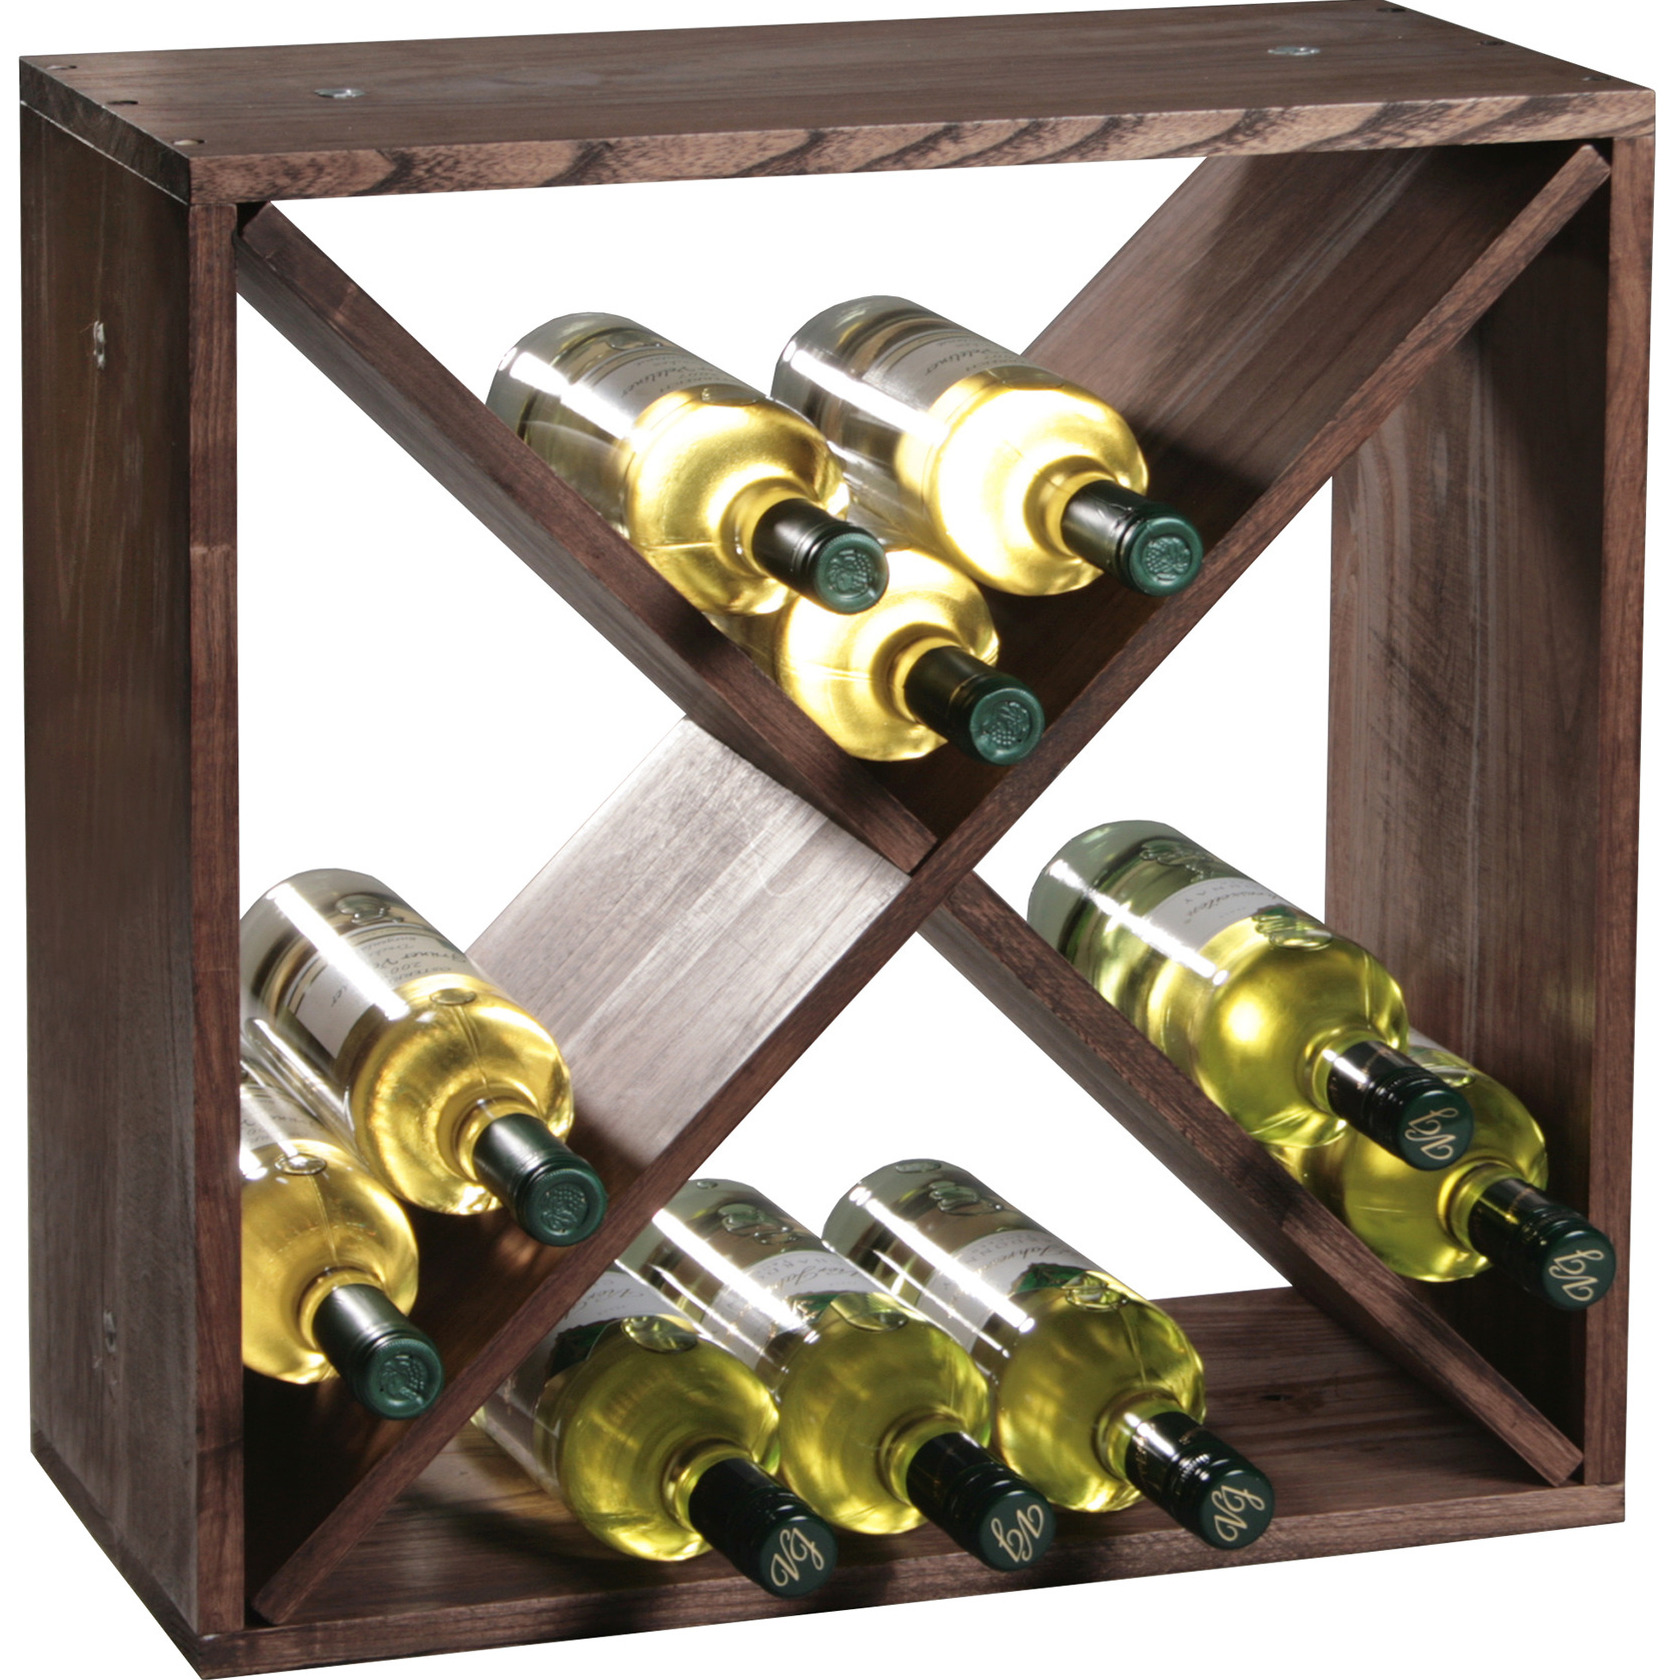 Houten wijnflessen rek-wijnrek vierkant voor 24 flessen 25 x 50 x 50 cm